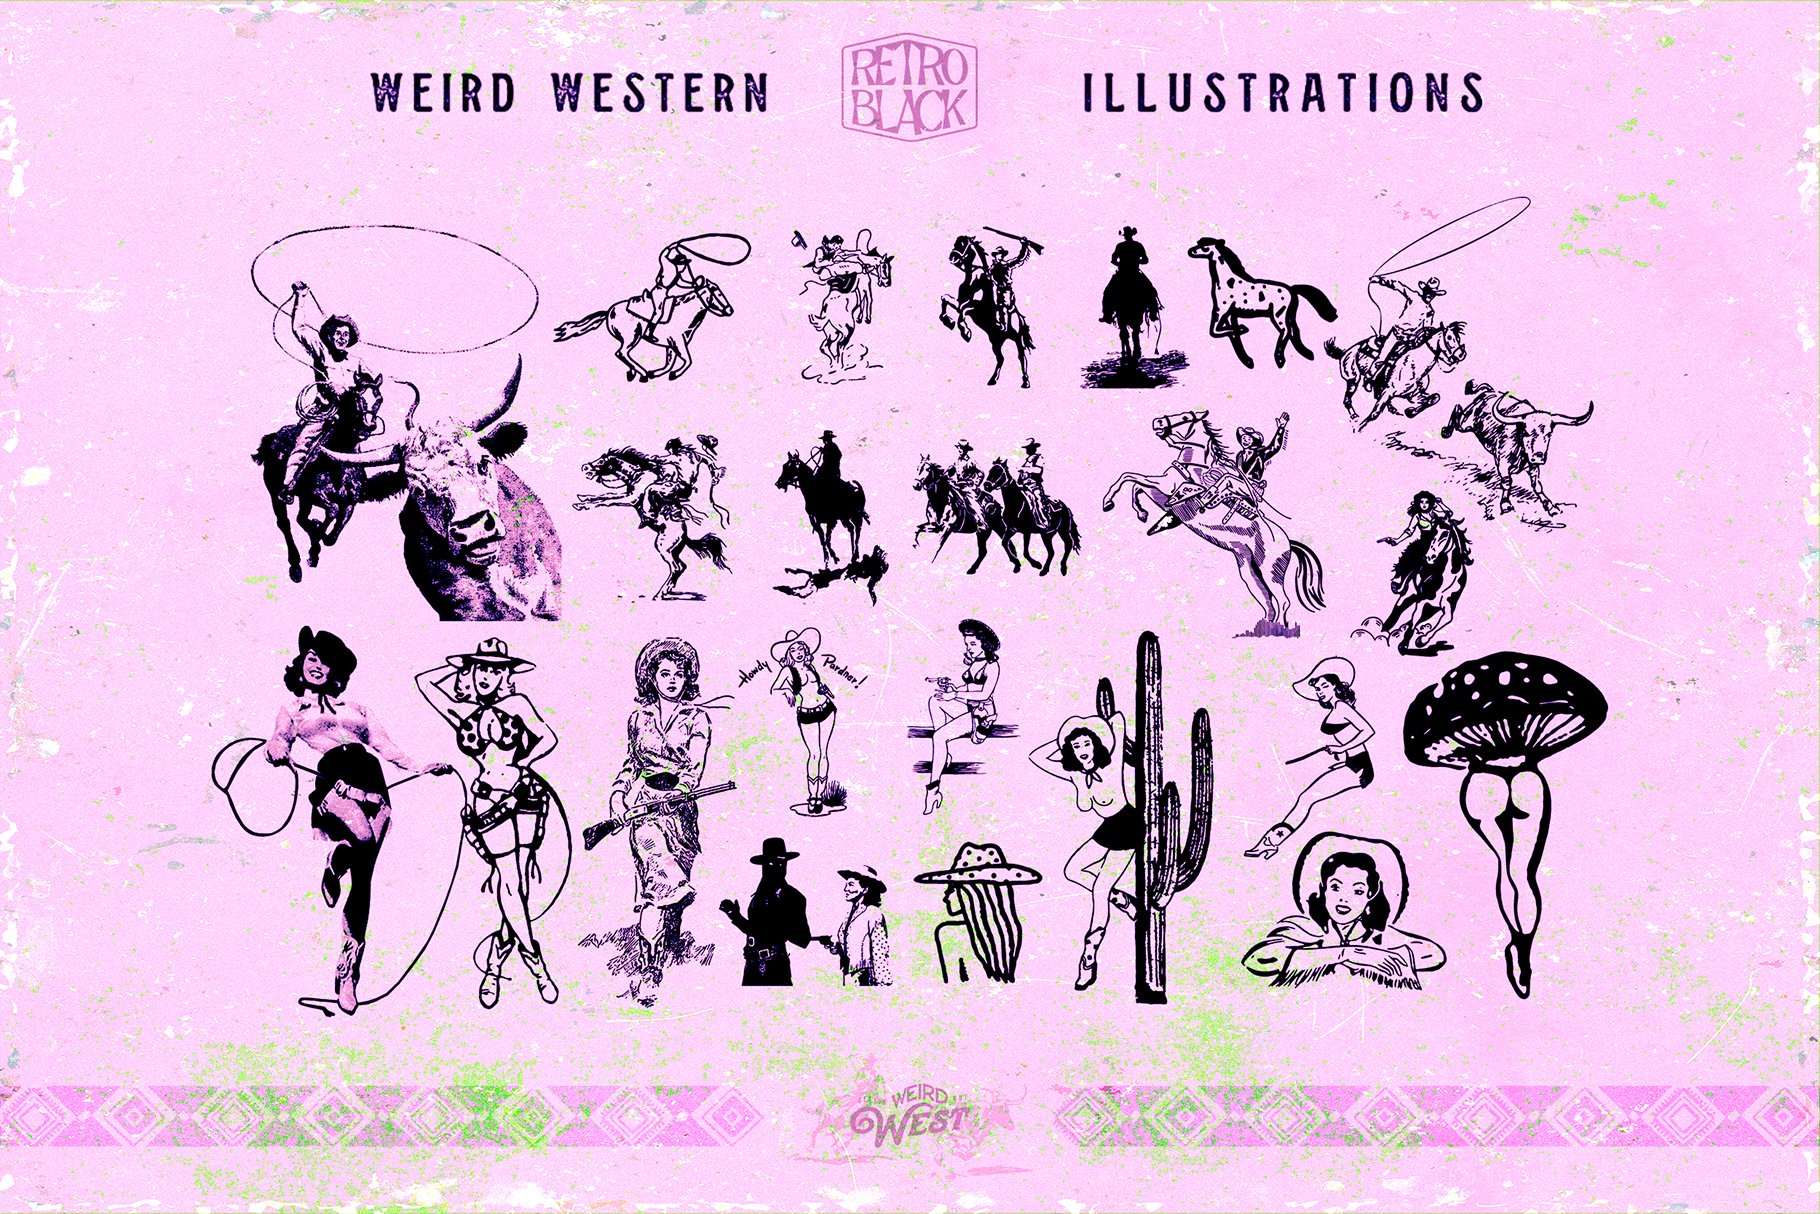 320款90年代复古西部牛仔沙漠元素动物仙人掌矢量图标插图AI矢量设计素材 320 Western Icons and Illustrations（7712）图层云4